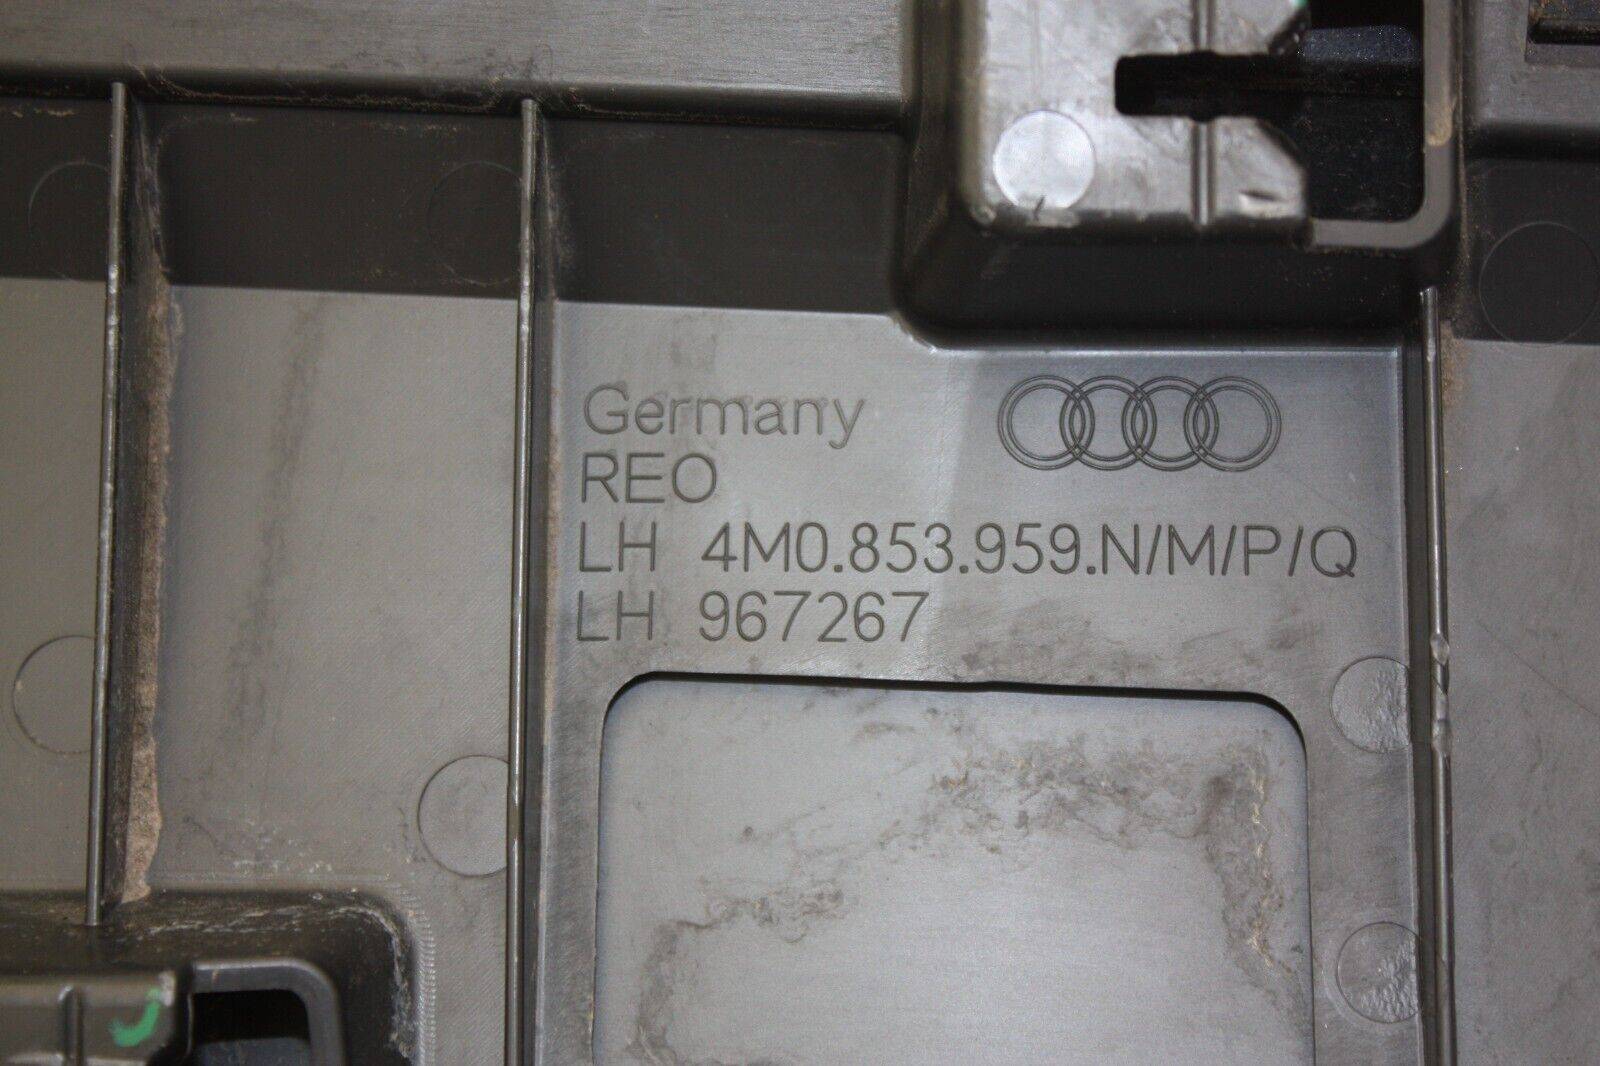 Audi-Q7-S-Line-Front-Left-Door-Moulding-2019-ON-4M0853959N-Genuine-DAMAGED-176403910384-9